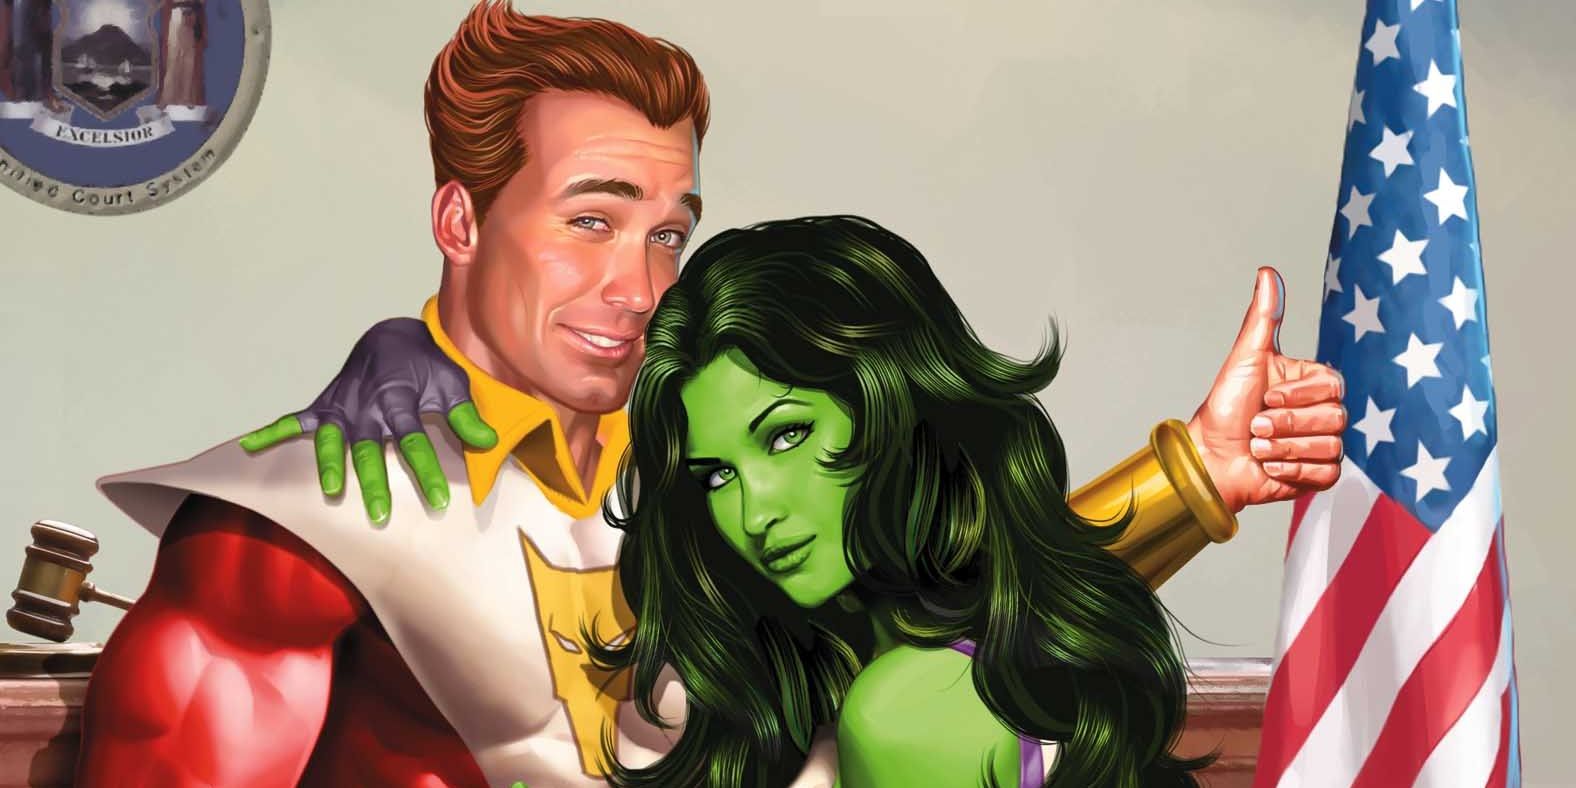 Starfox Of The Avengers And She-Hulk